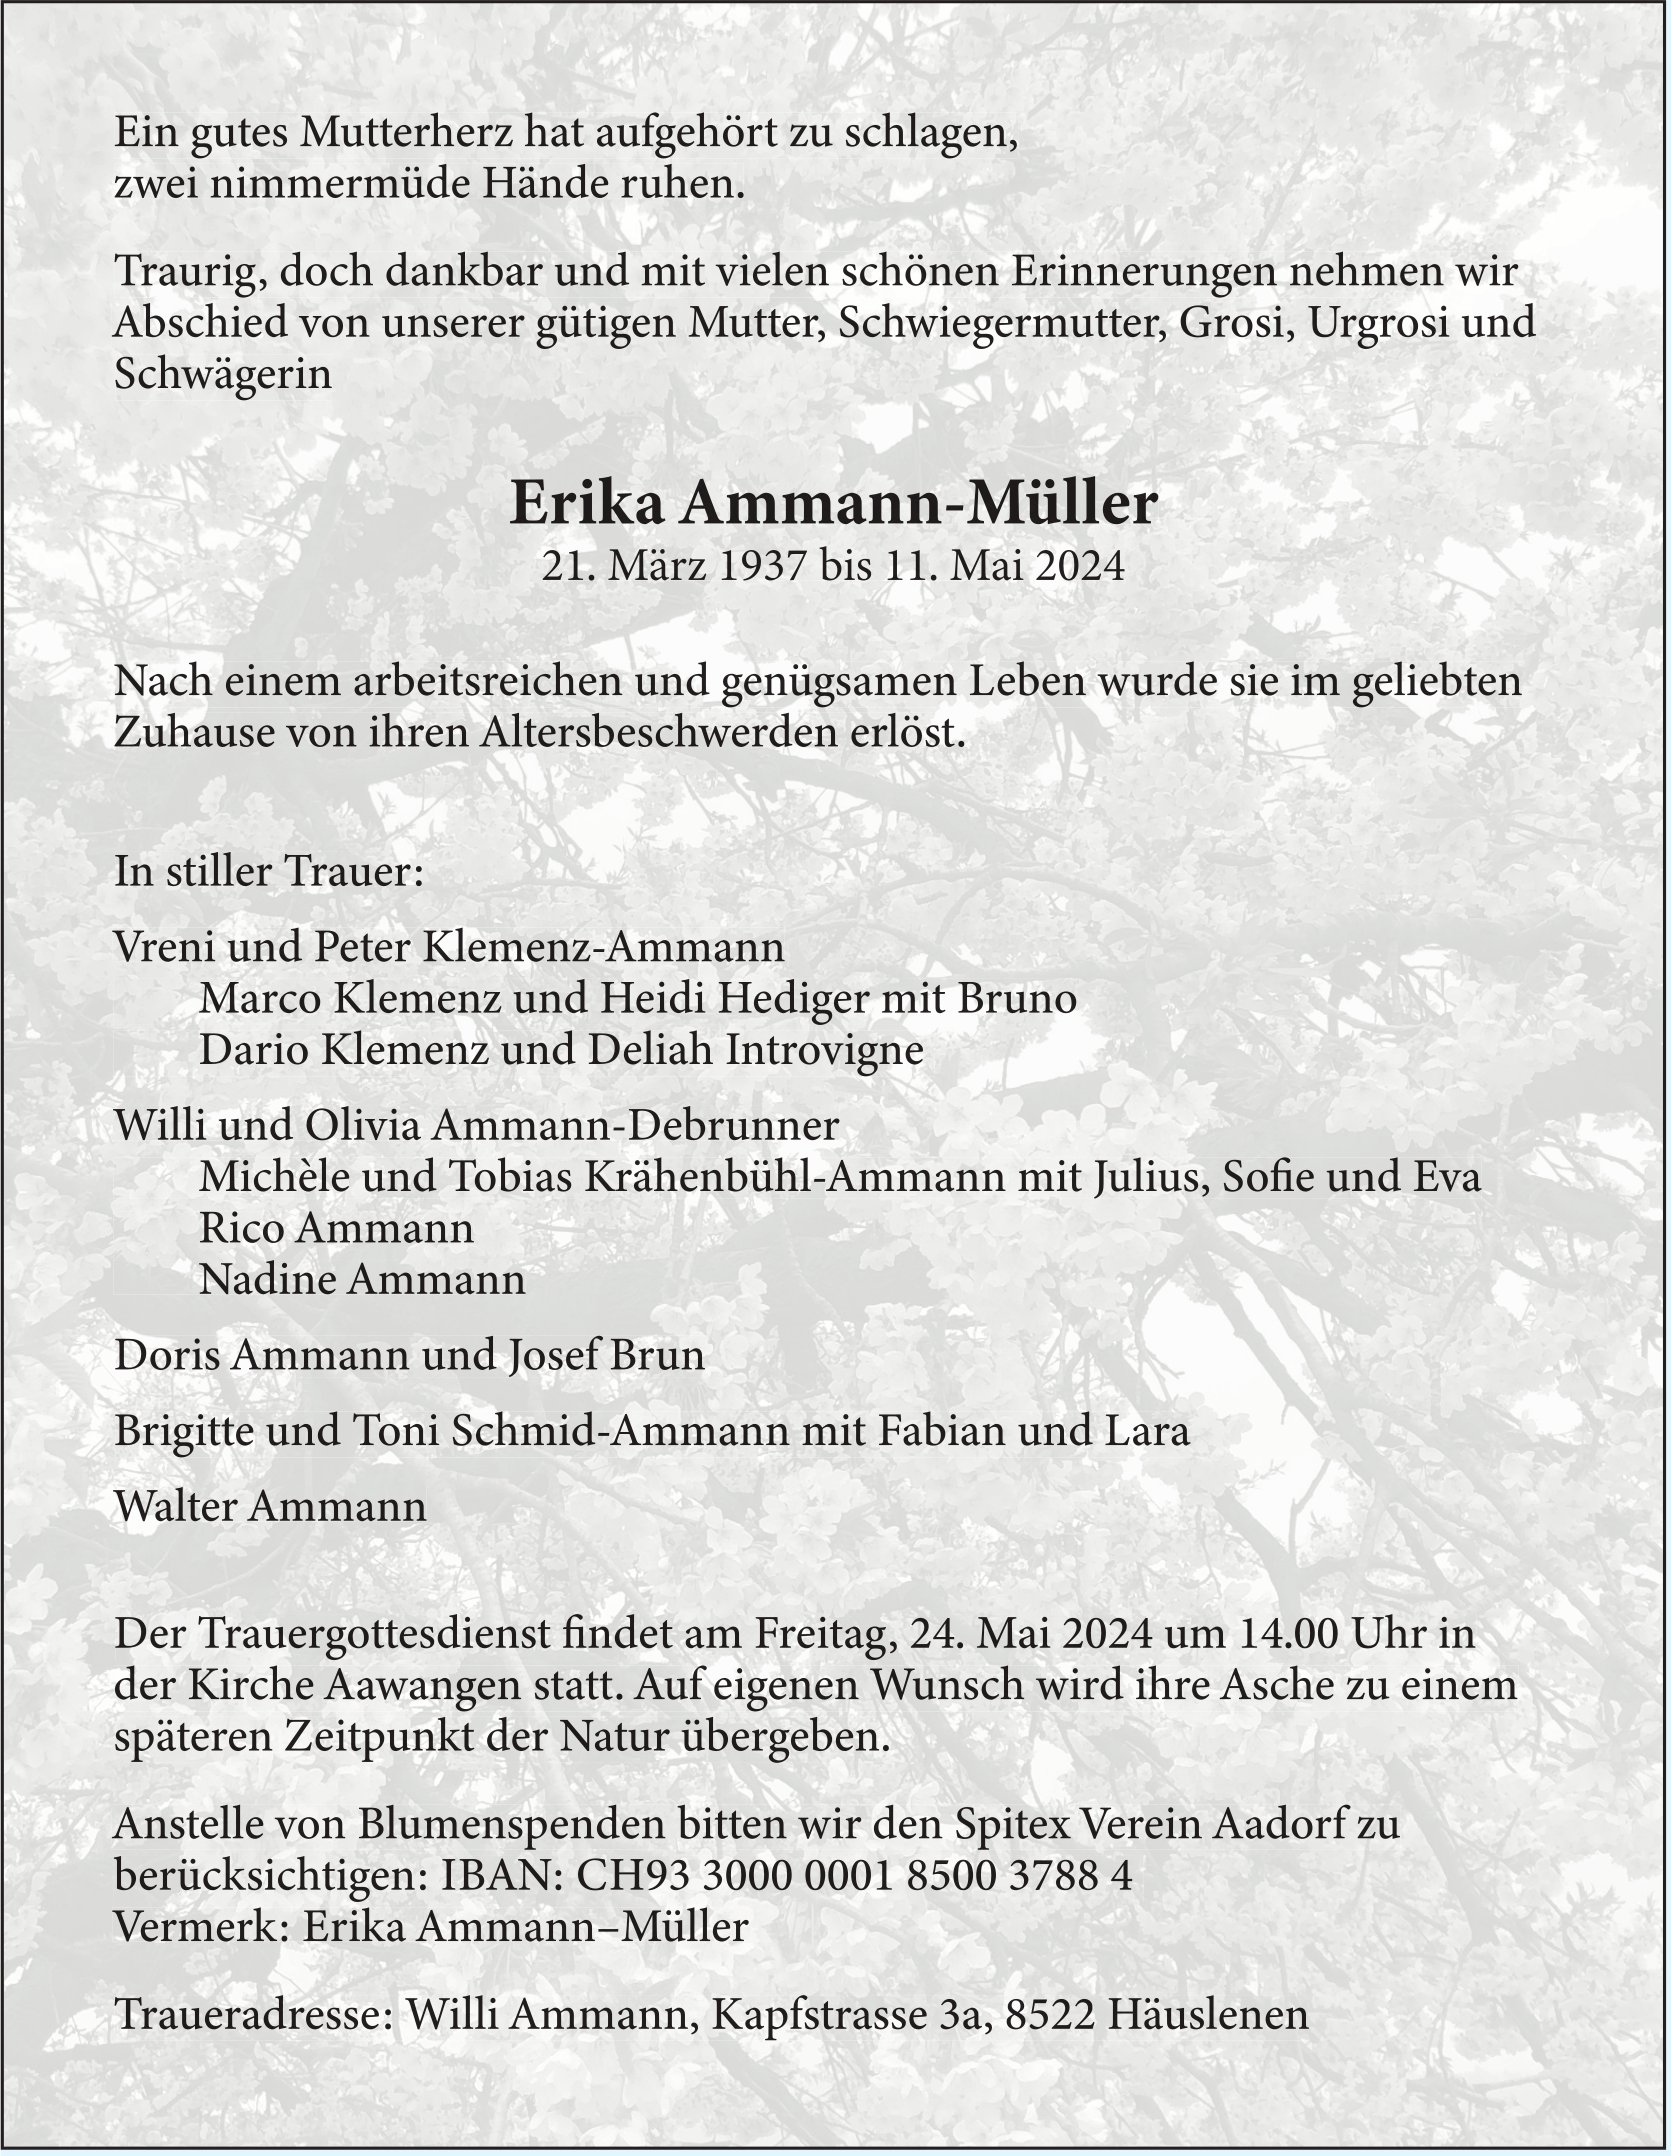 Ammann-Müller Erika, Mai 2024 / TA